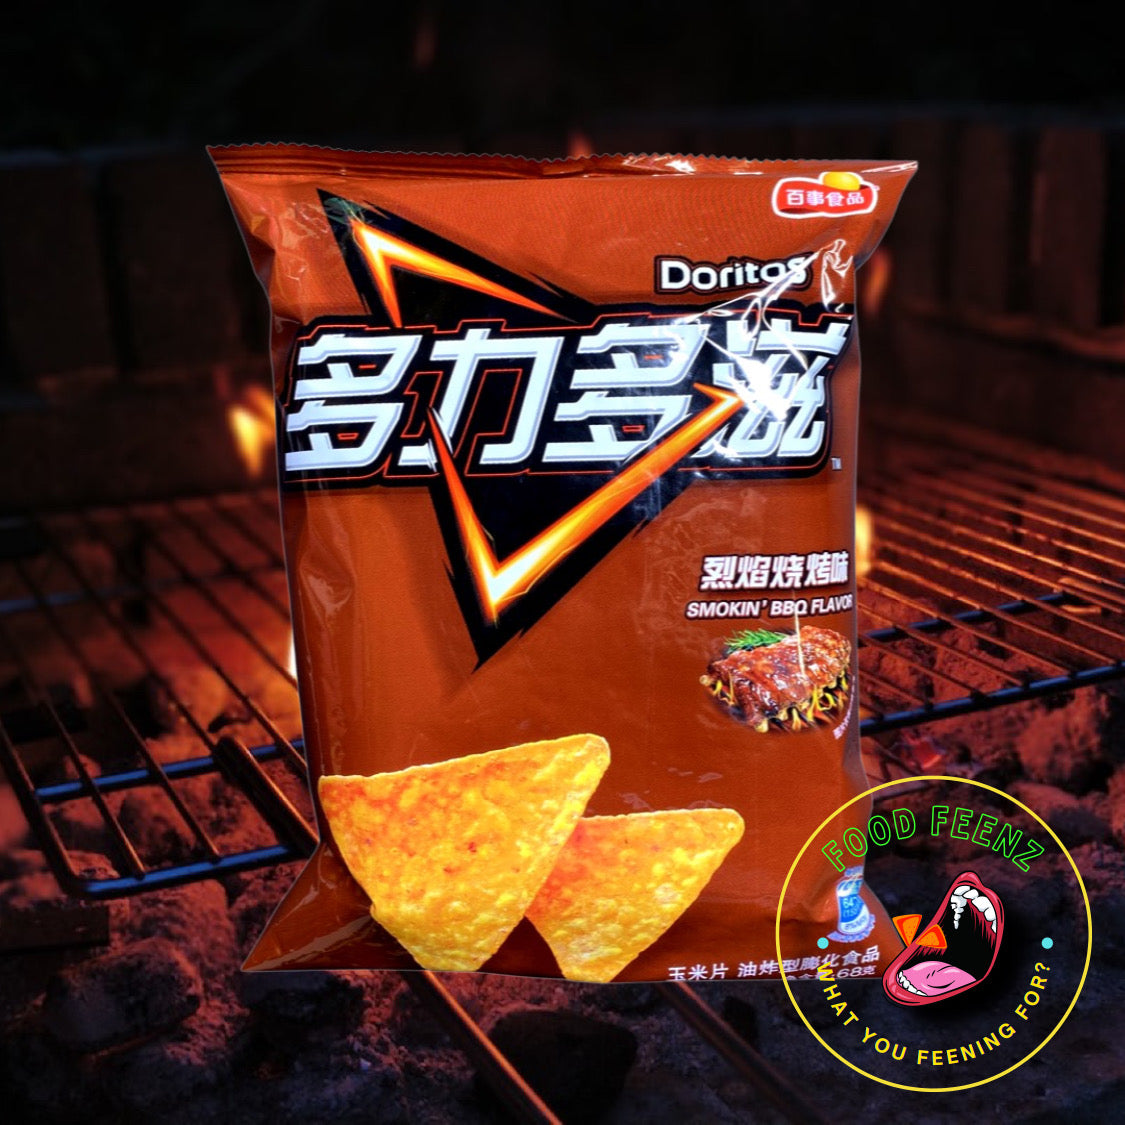 Doritos Nachos Smokin BBQ Flavor (China)